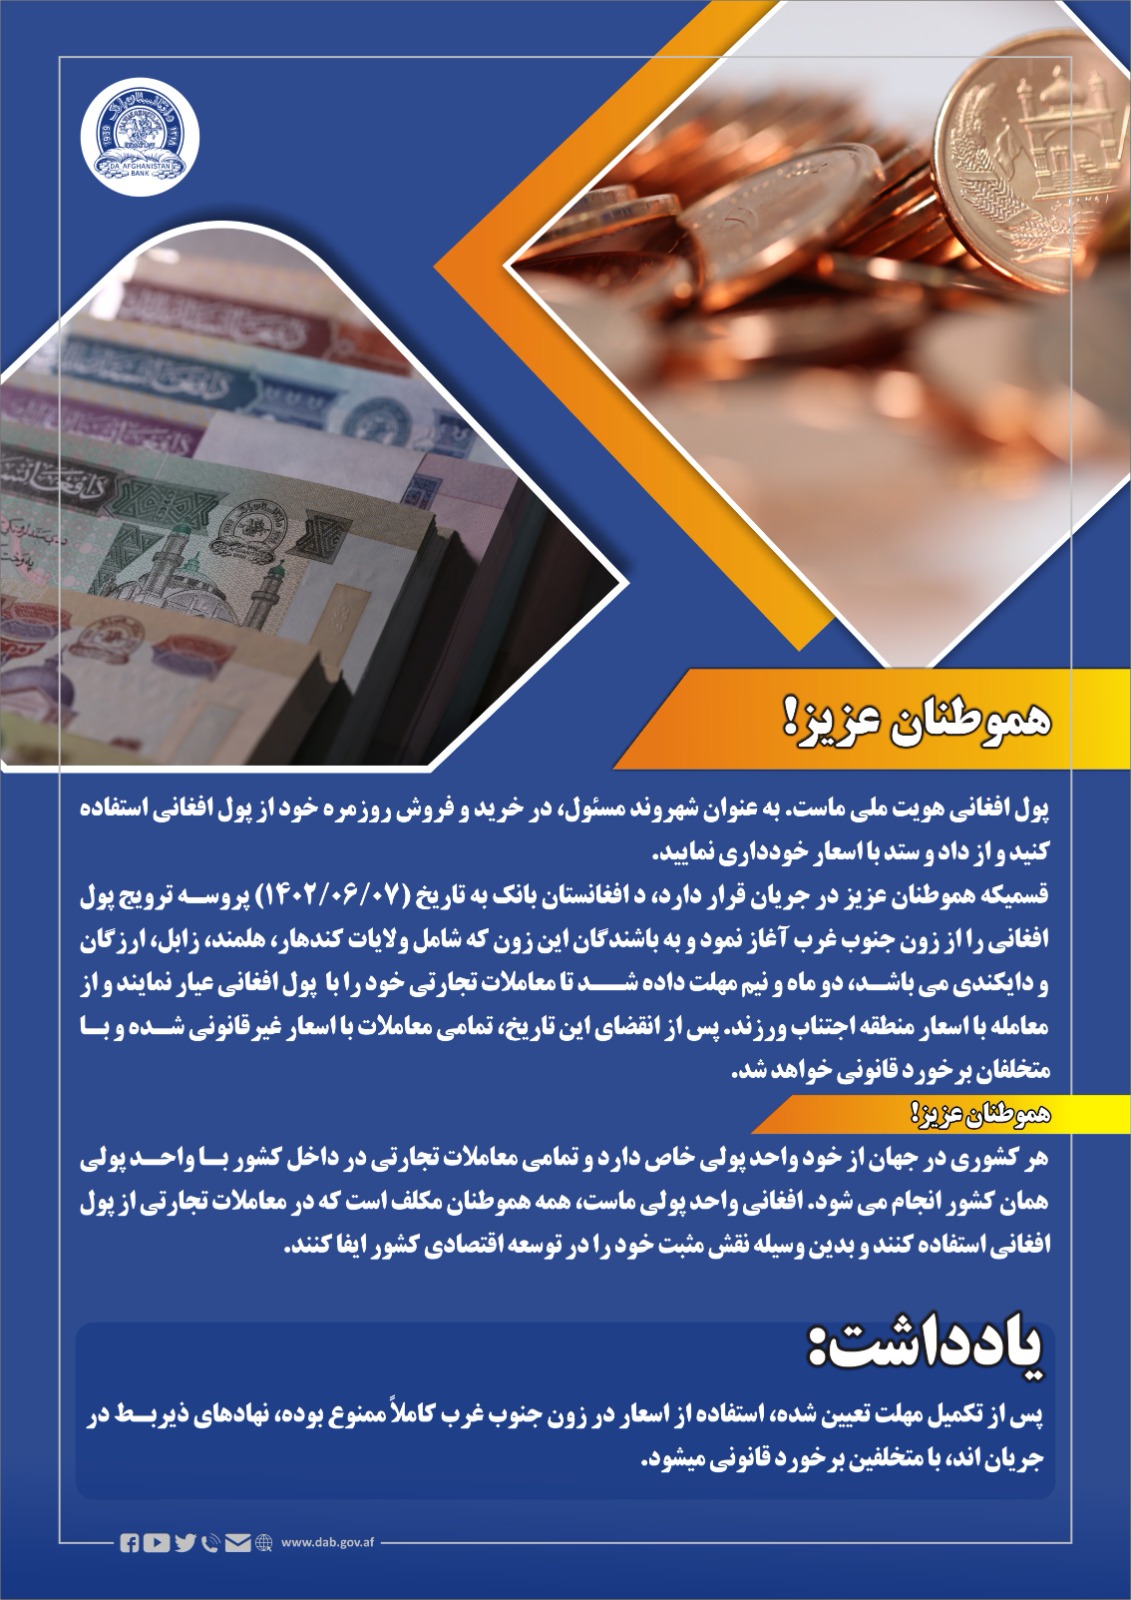 پول افغانی هویت ملی ماست